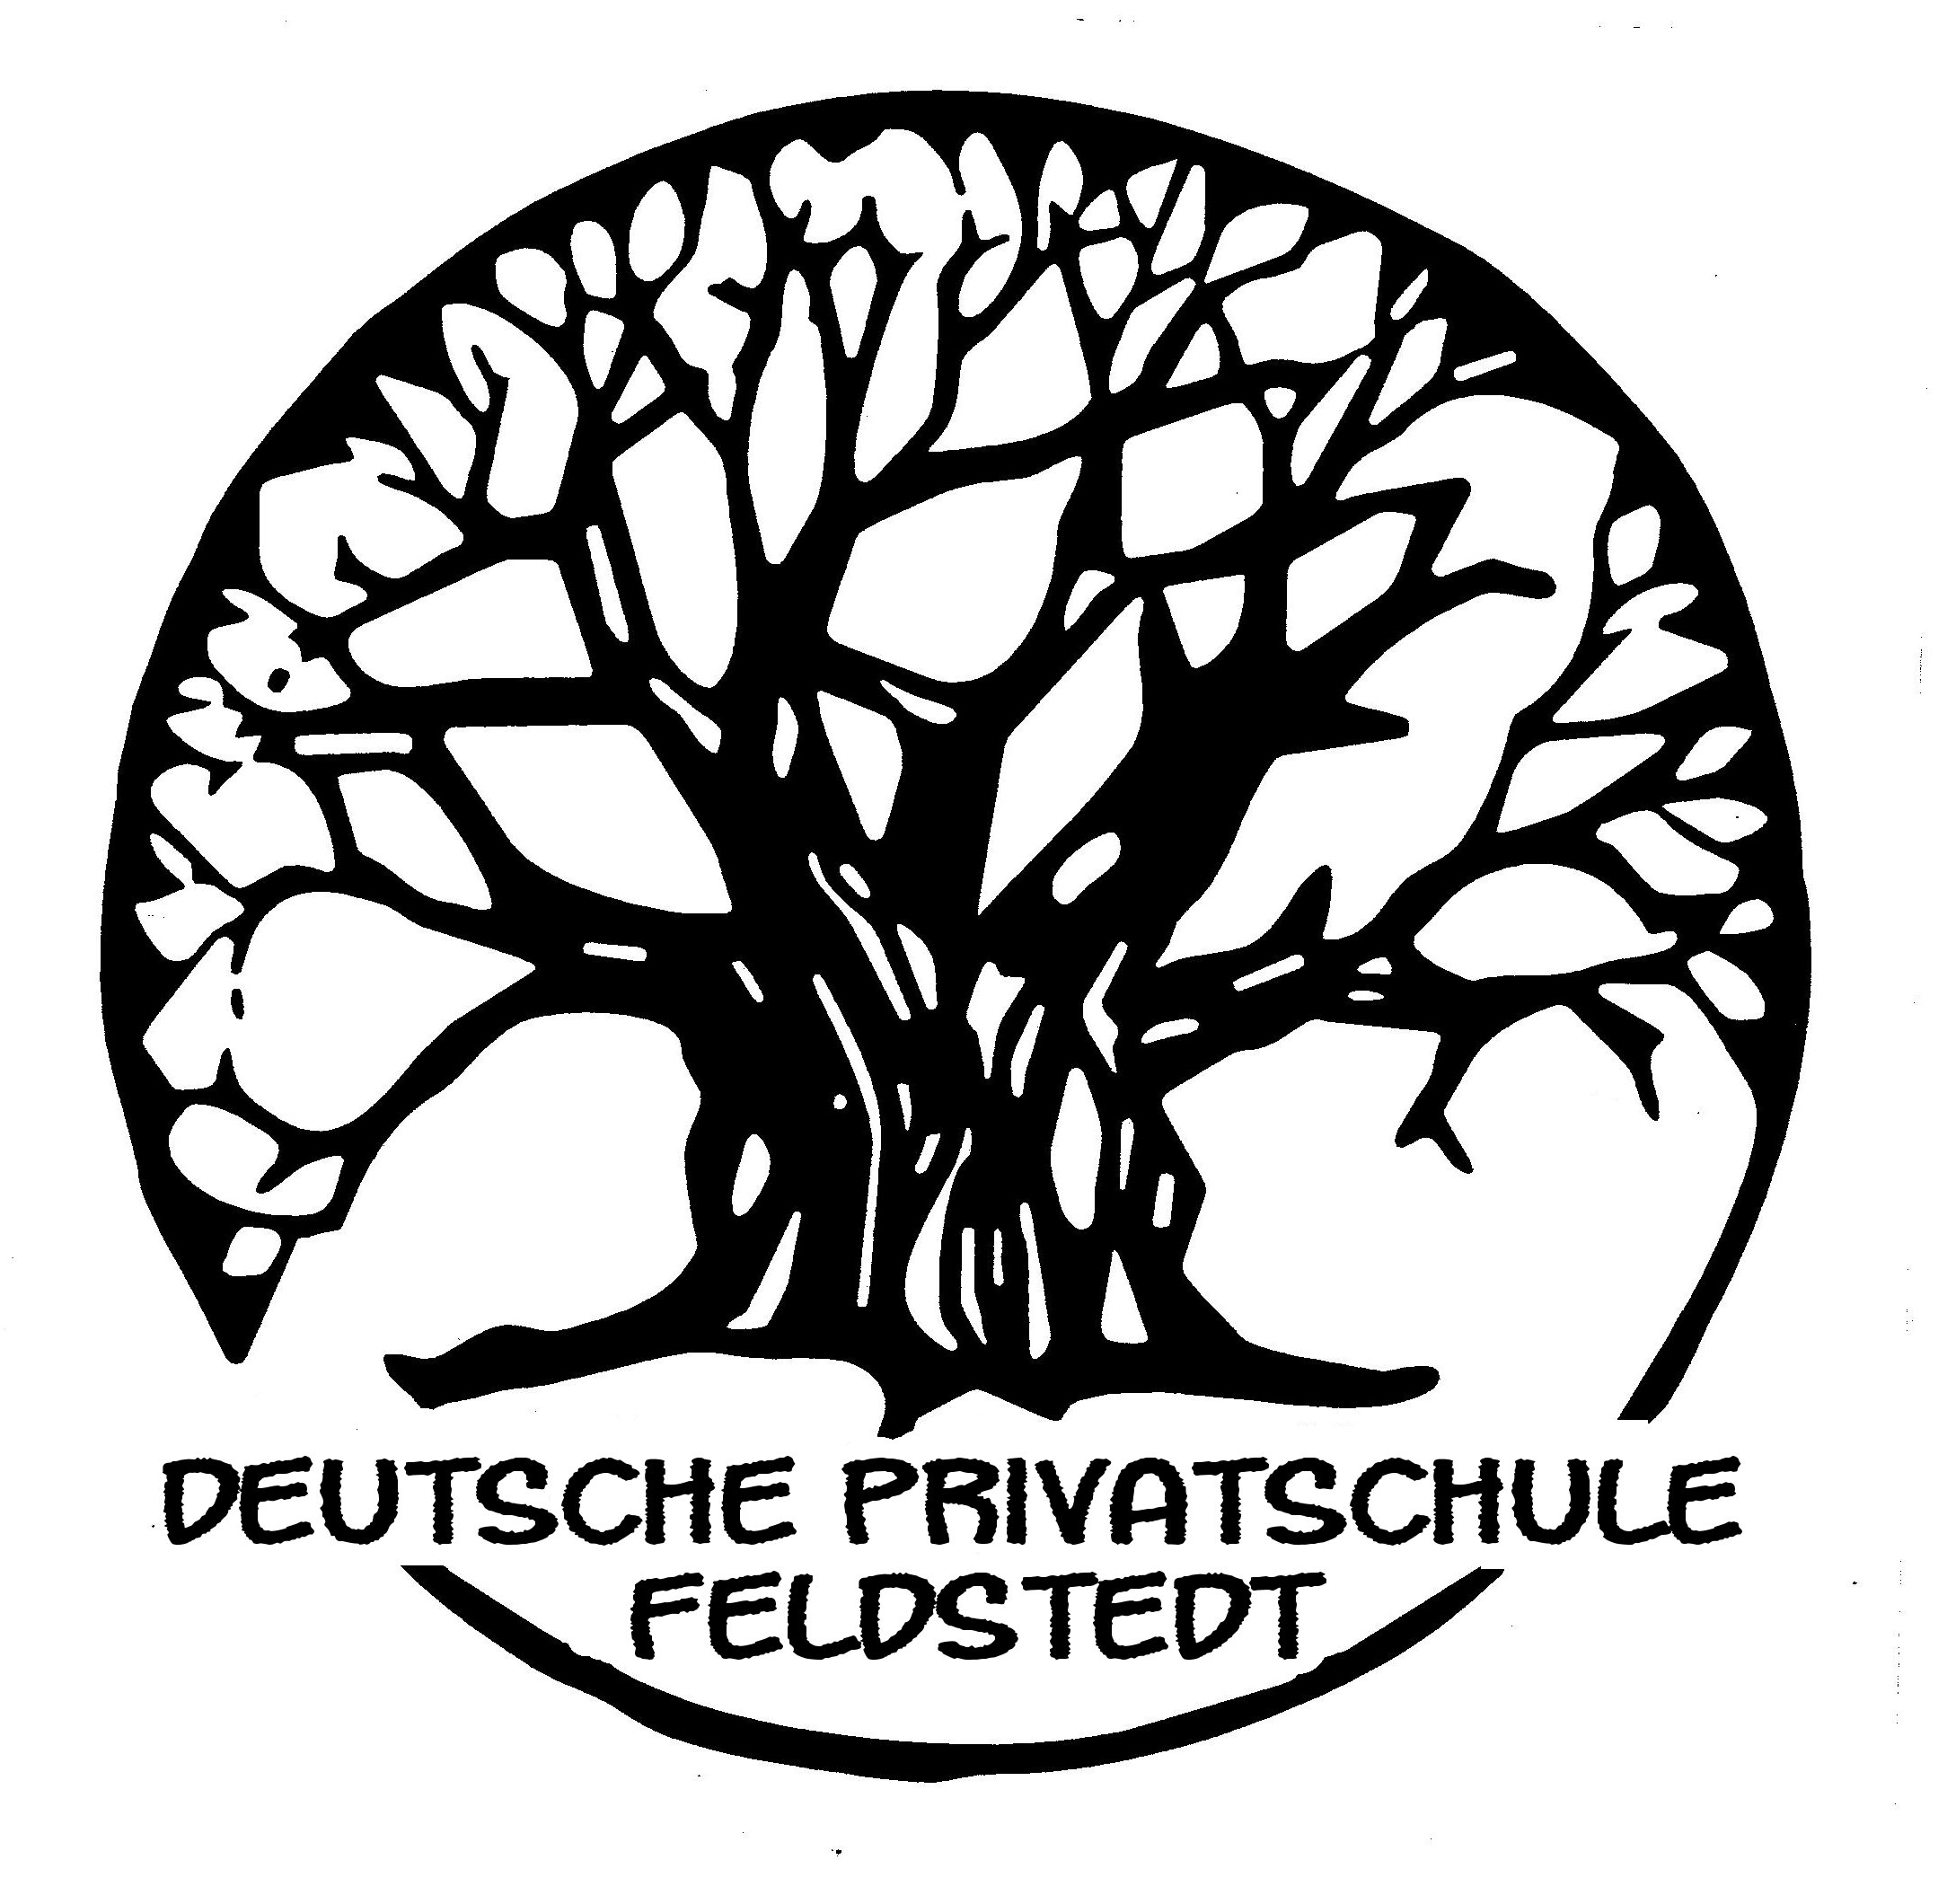 Deutsche Schule Feldstedt - Eine Schule - zwei Sprachen